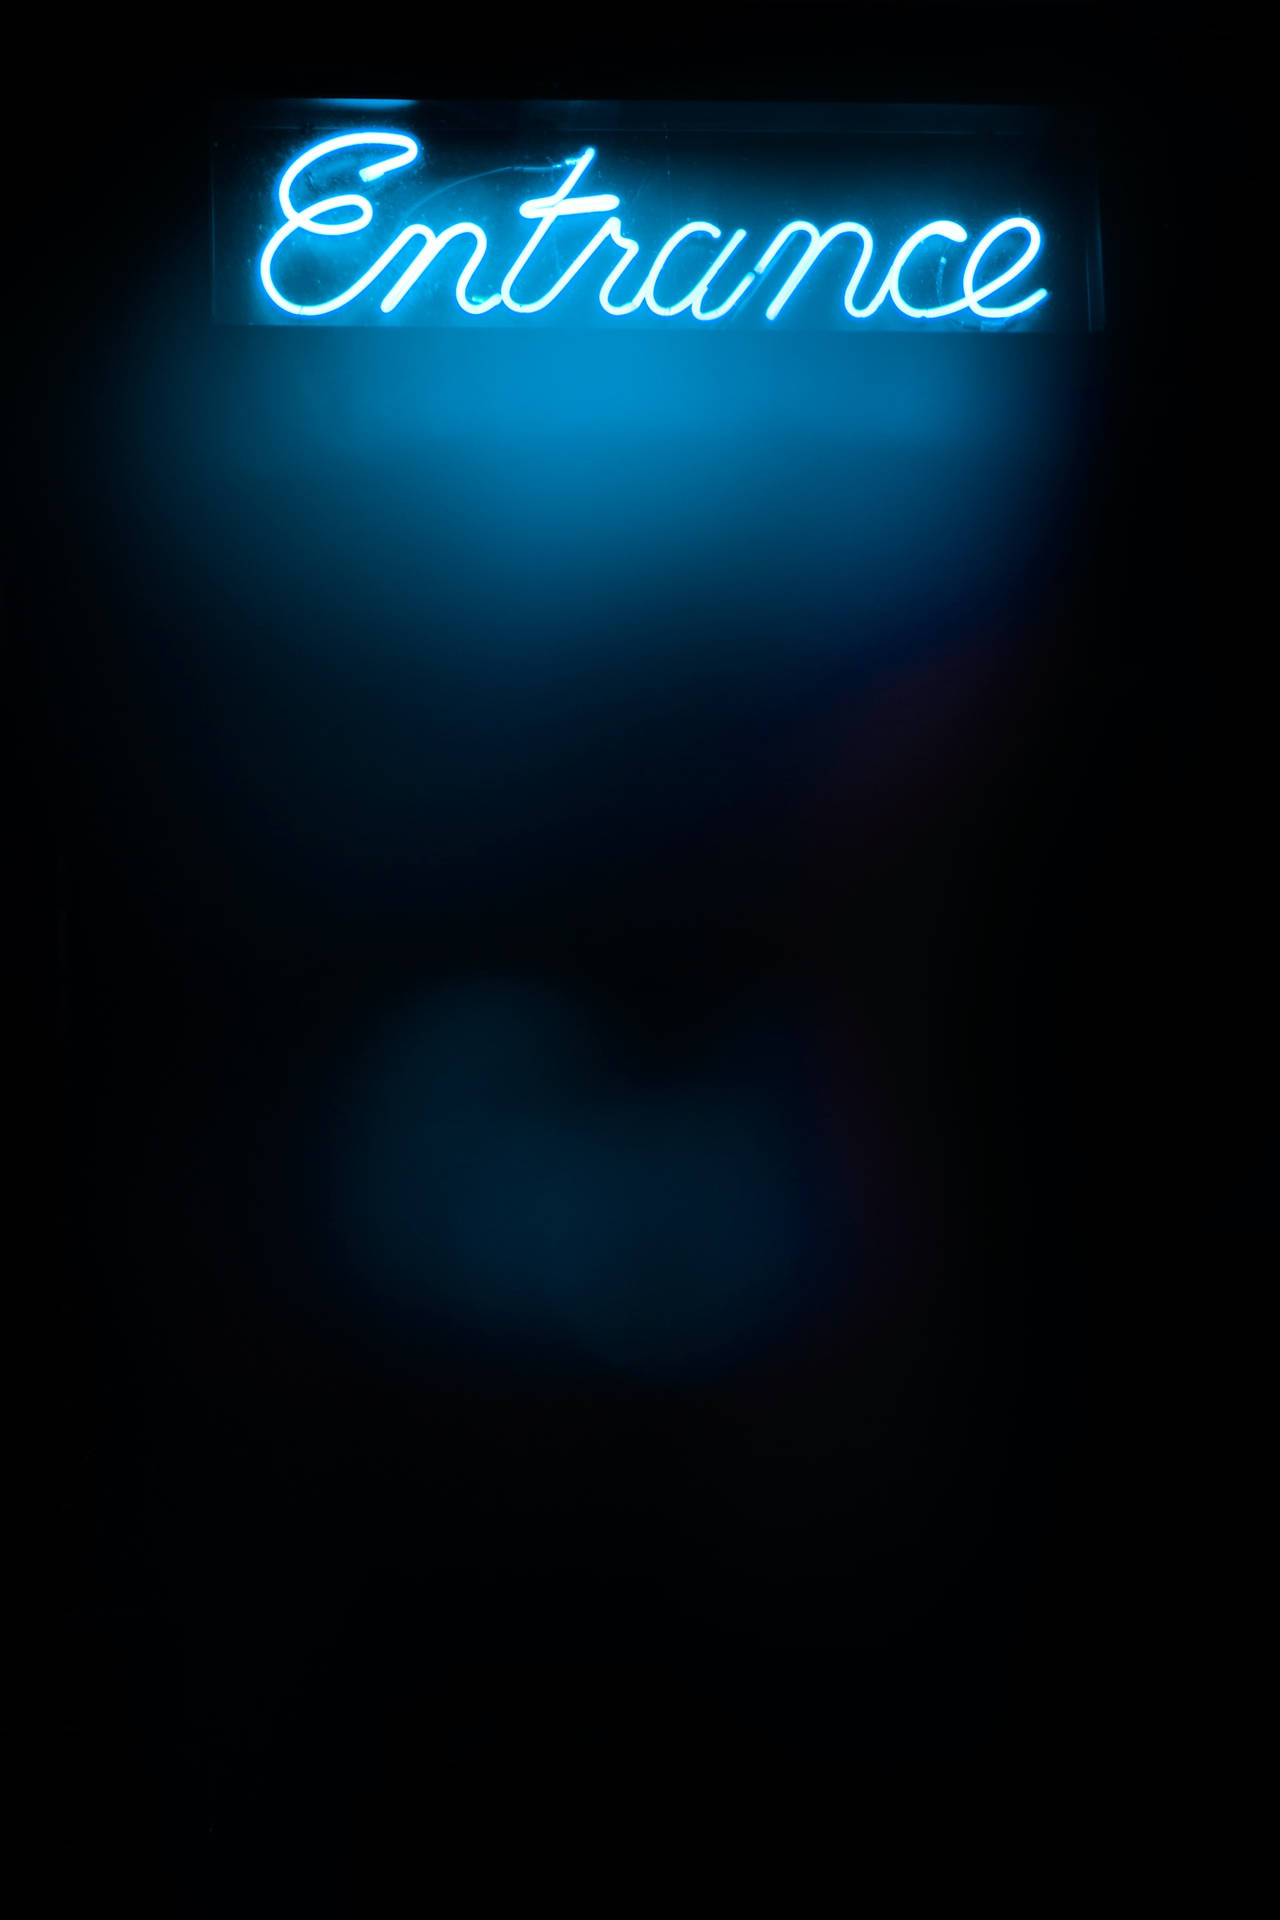 Eingangsschildin Leuchtendem Blau Für Das Iphone Wallpaper